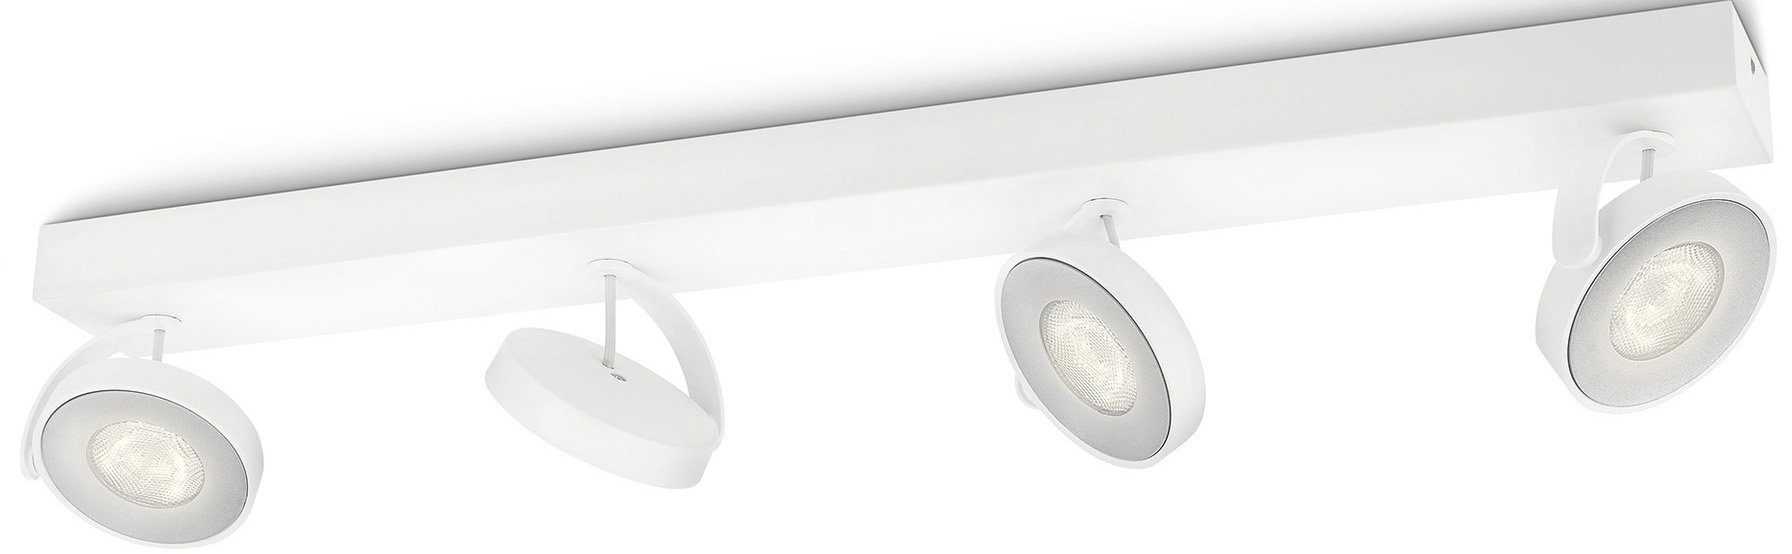 Flexibilität Deckenspot Philips 4flg maximale 2000lm myLiving integriert, LED Weiß, Clockwork, Warmweiß, fest Spot für Spotkopf Schwenkbarer LED